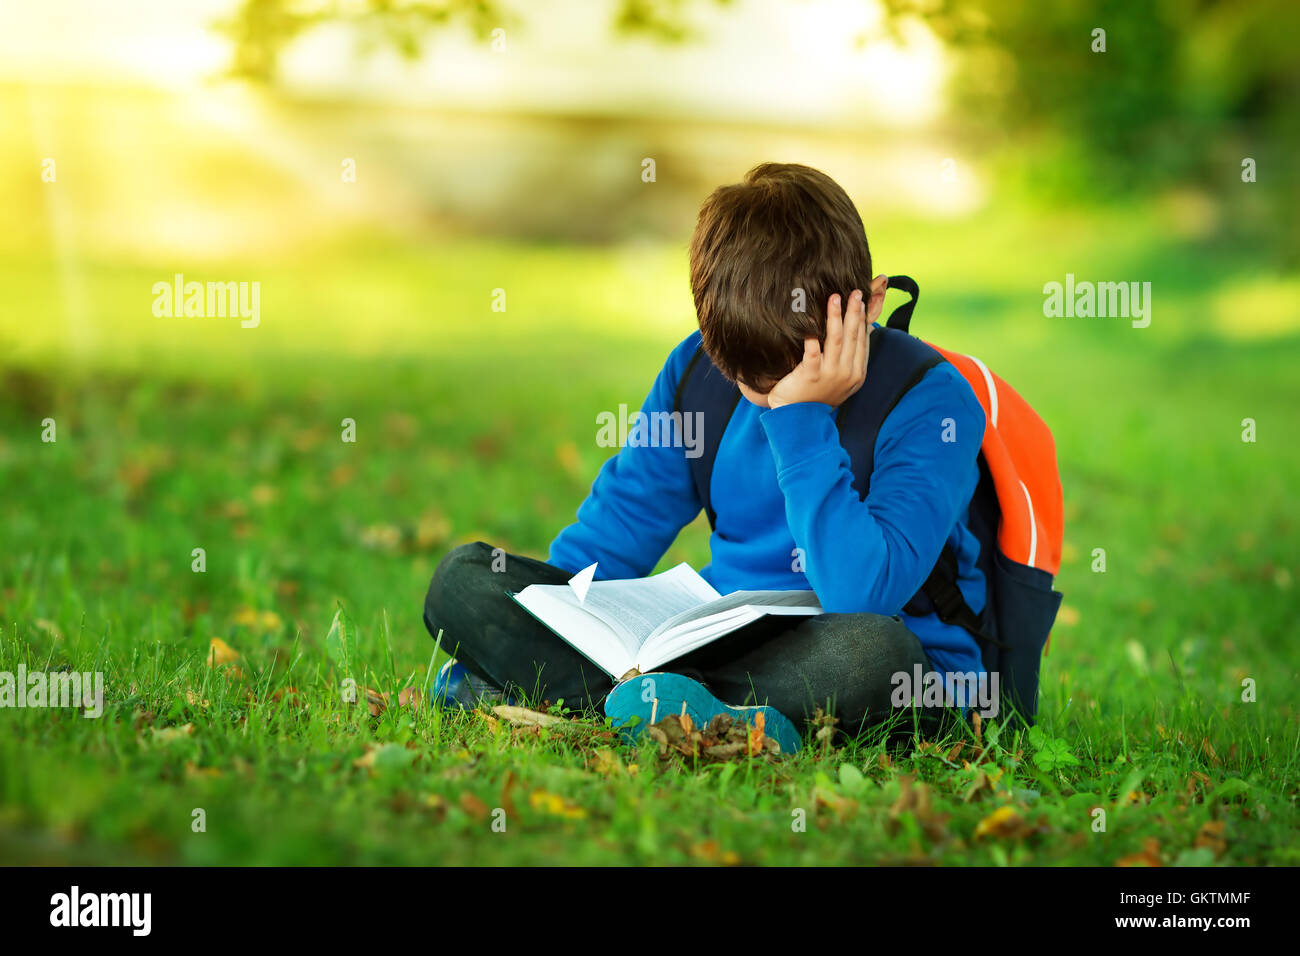 Junge sitzt mit Rucksack im park Stockfoto